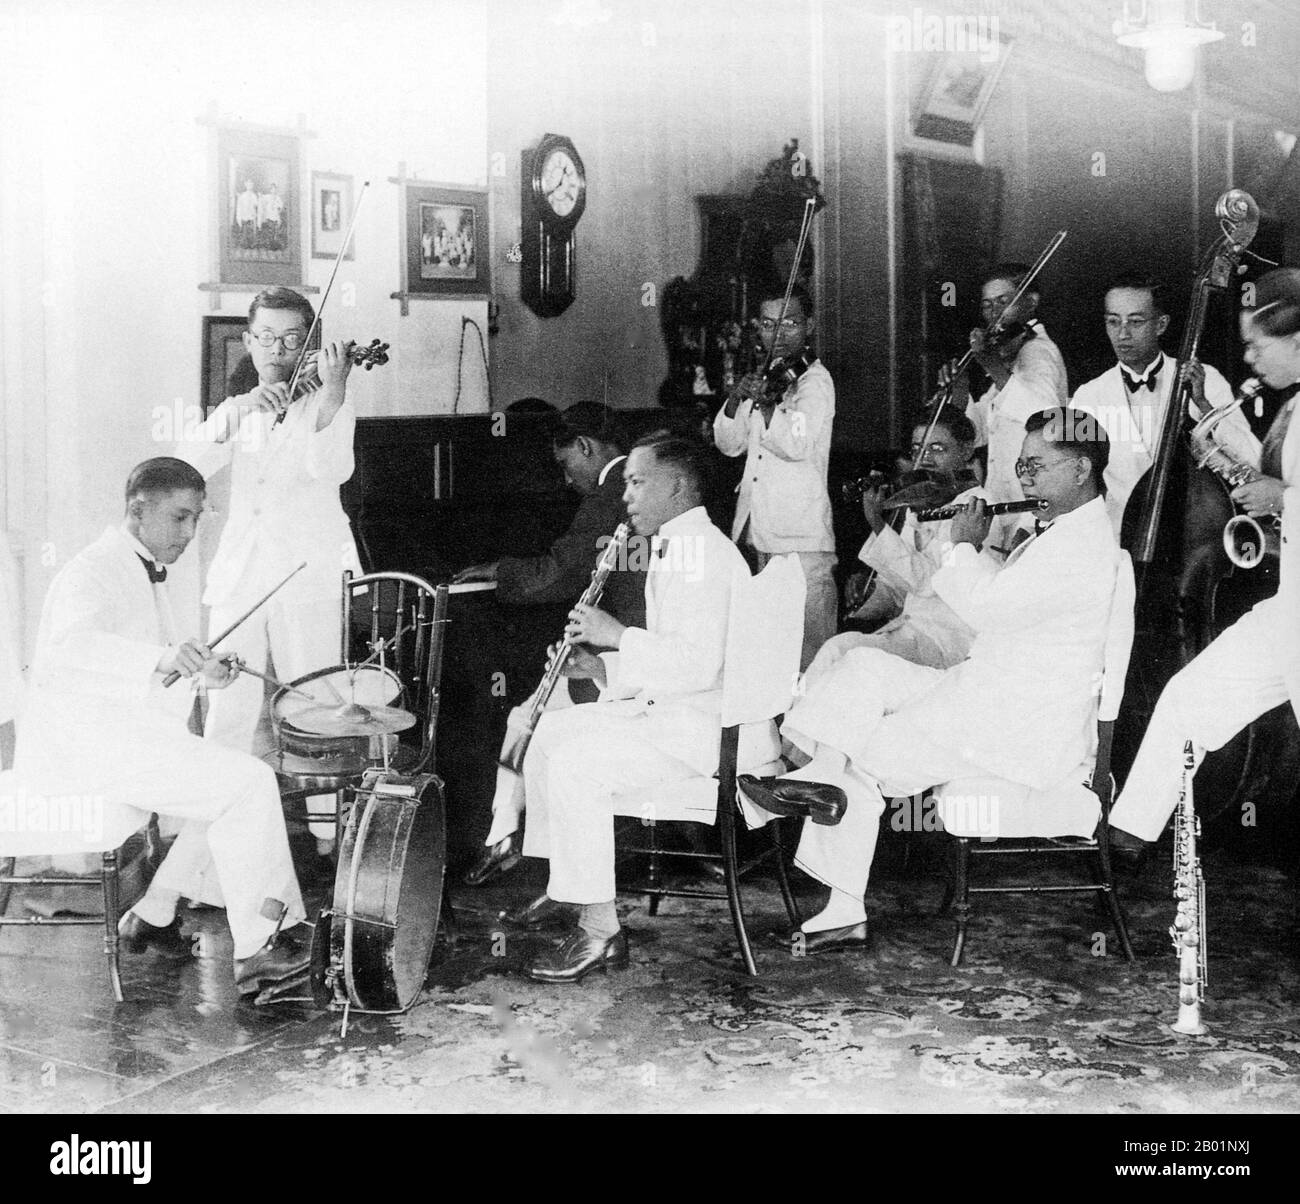 Malaysia/Singapur: Straits Chinese/Peranakan Jazz Band, Penang, 1935. Peranakan Chinese und Baba-Nyonya sind die Bezeichnungen für die Nachkommen chinesischer Einwanderer aus dem späten 15. Und 16. Jahrhundert, die während der Kolonialzeit in den malaiisch-indonesischen Archipel von Nusantara kamen. Mitglieder dieser Gemeinde in Malaysia bezeichnen sich als „Nyonya-Baba“ oder „Baba-Nyonya“. Nyonya ist der Begriff für die Weibchen und Baba für die Männchen. Sie gilt insbesondere für die ethnischen chinesischen Bevölkerungsgruppen der British Straits Settlements in Malaya und der von den Niederlanden kontrollierten Insel Java und anderen Orten. Stockfoto